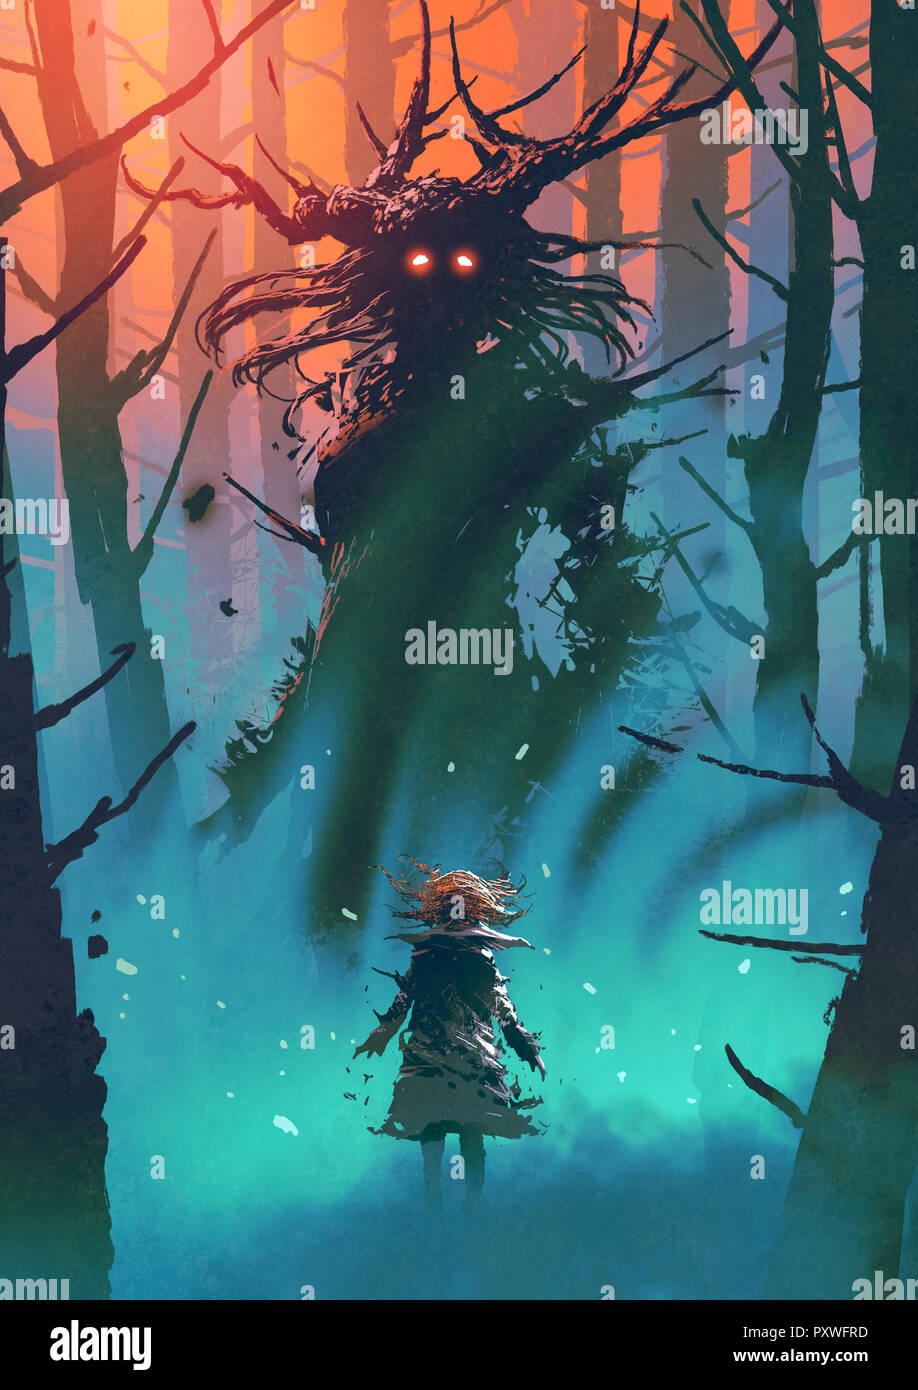 Bambina e la strega cerca ogni altra in una foresta, arte digitale stile, illustrazione pittura Foto Stock